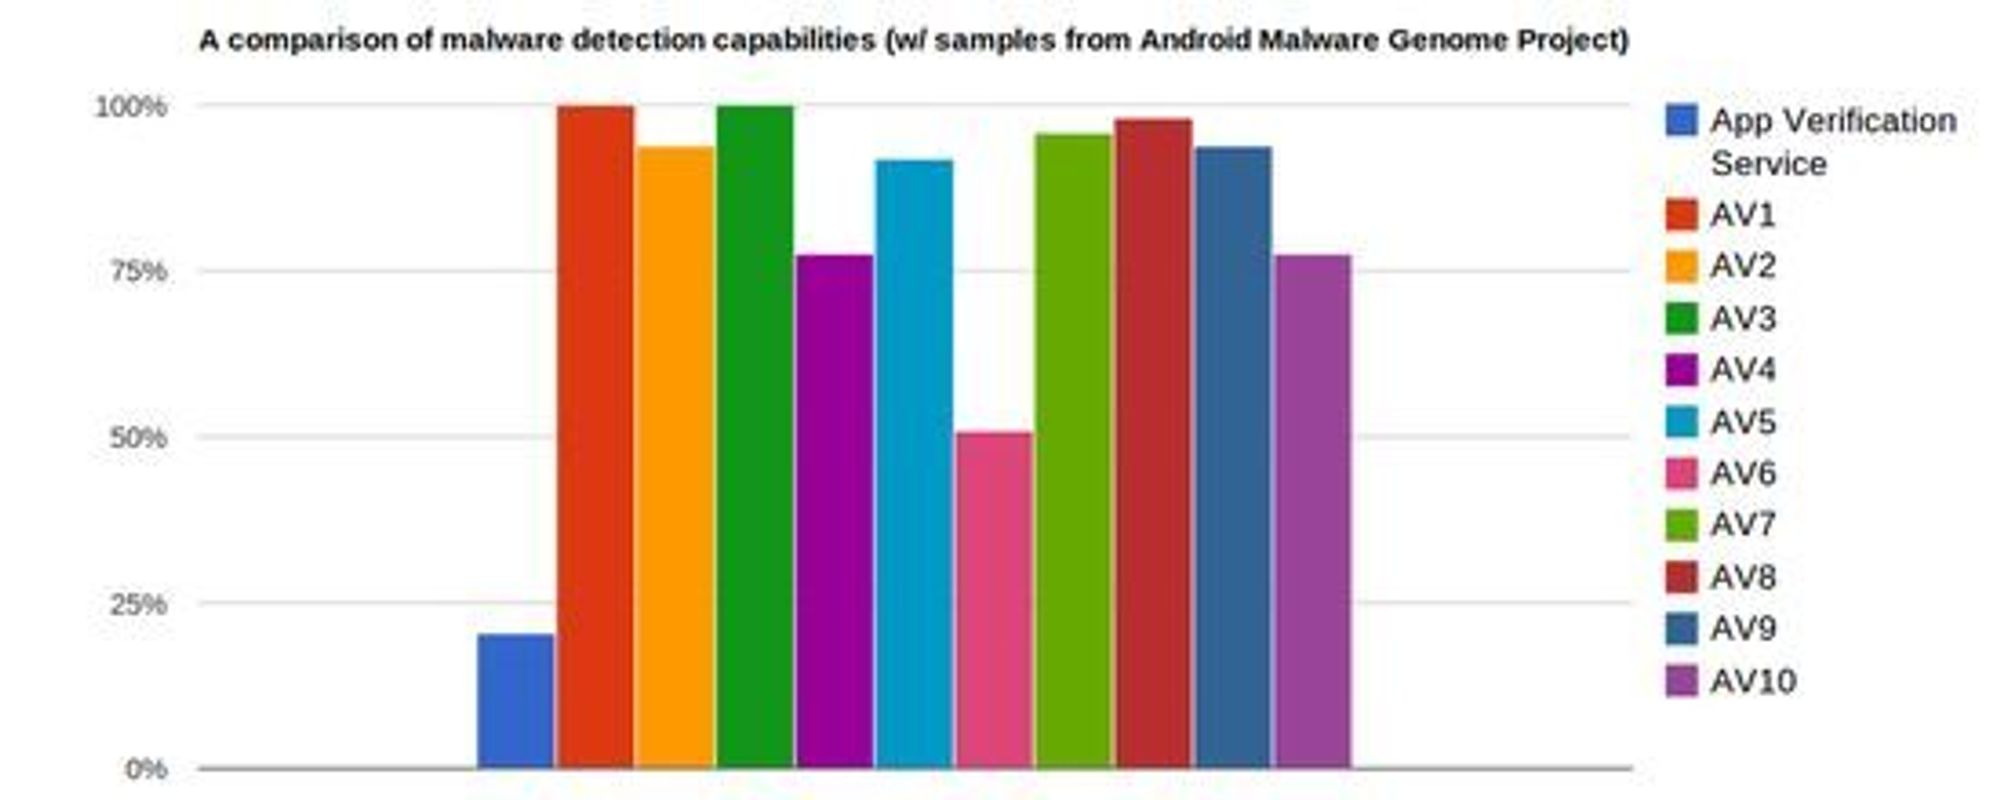 Andelen av 49 ulike eksempler på skadevare som ble gjenkjent av forskjellige antiskadevare-produkter. Stolpen til venstre viser resultatet til funksjonen i Google Play for Android 4.2.